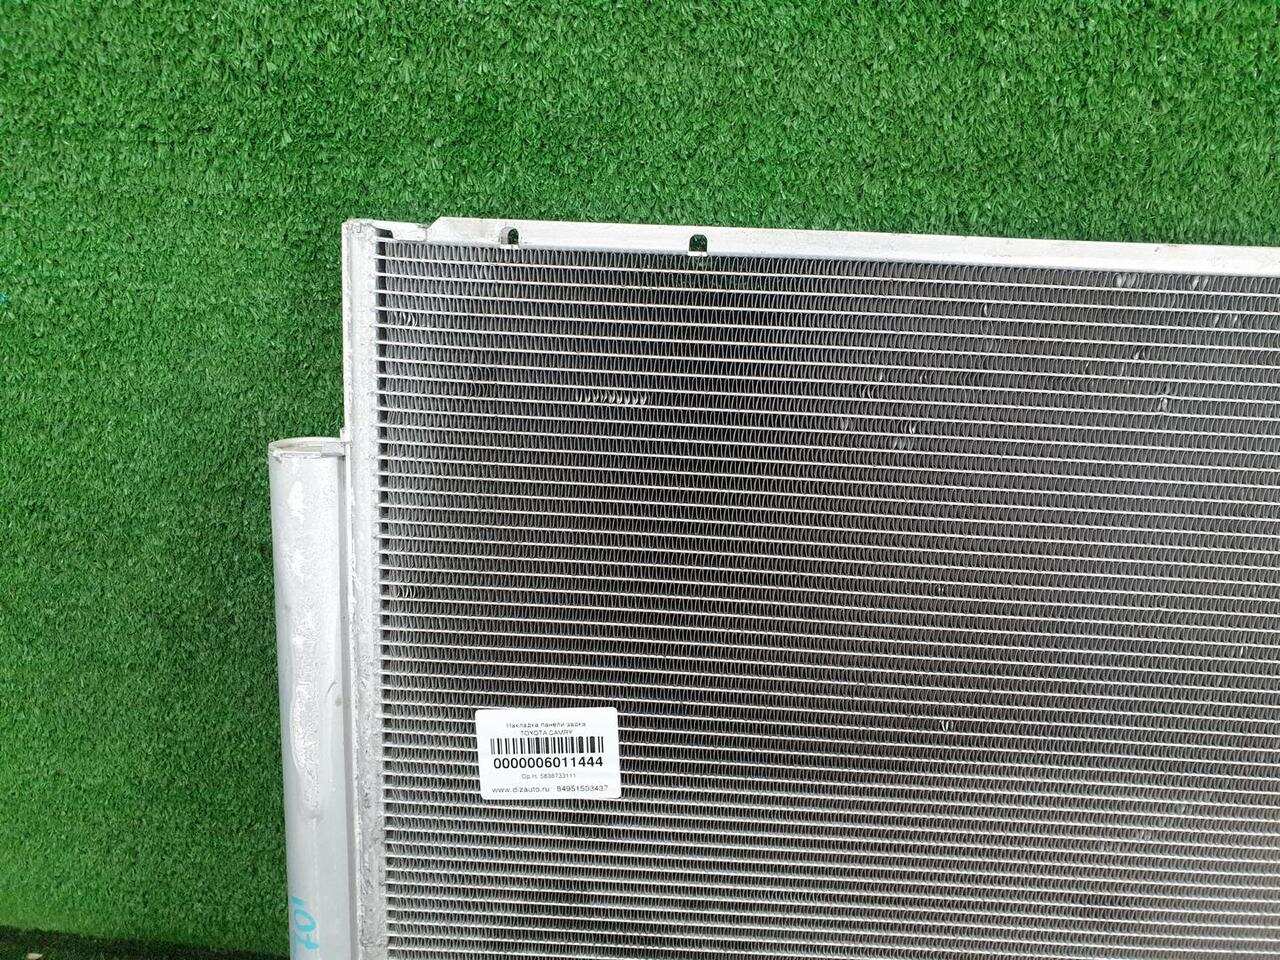 Радиатор кондиционера TOYOTA LAND CRUISER PRADO 150 (2009-2013) 8846060440 0000006011444